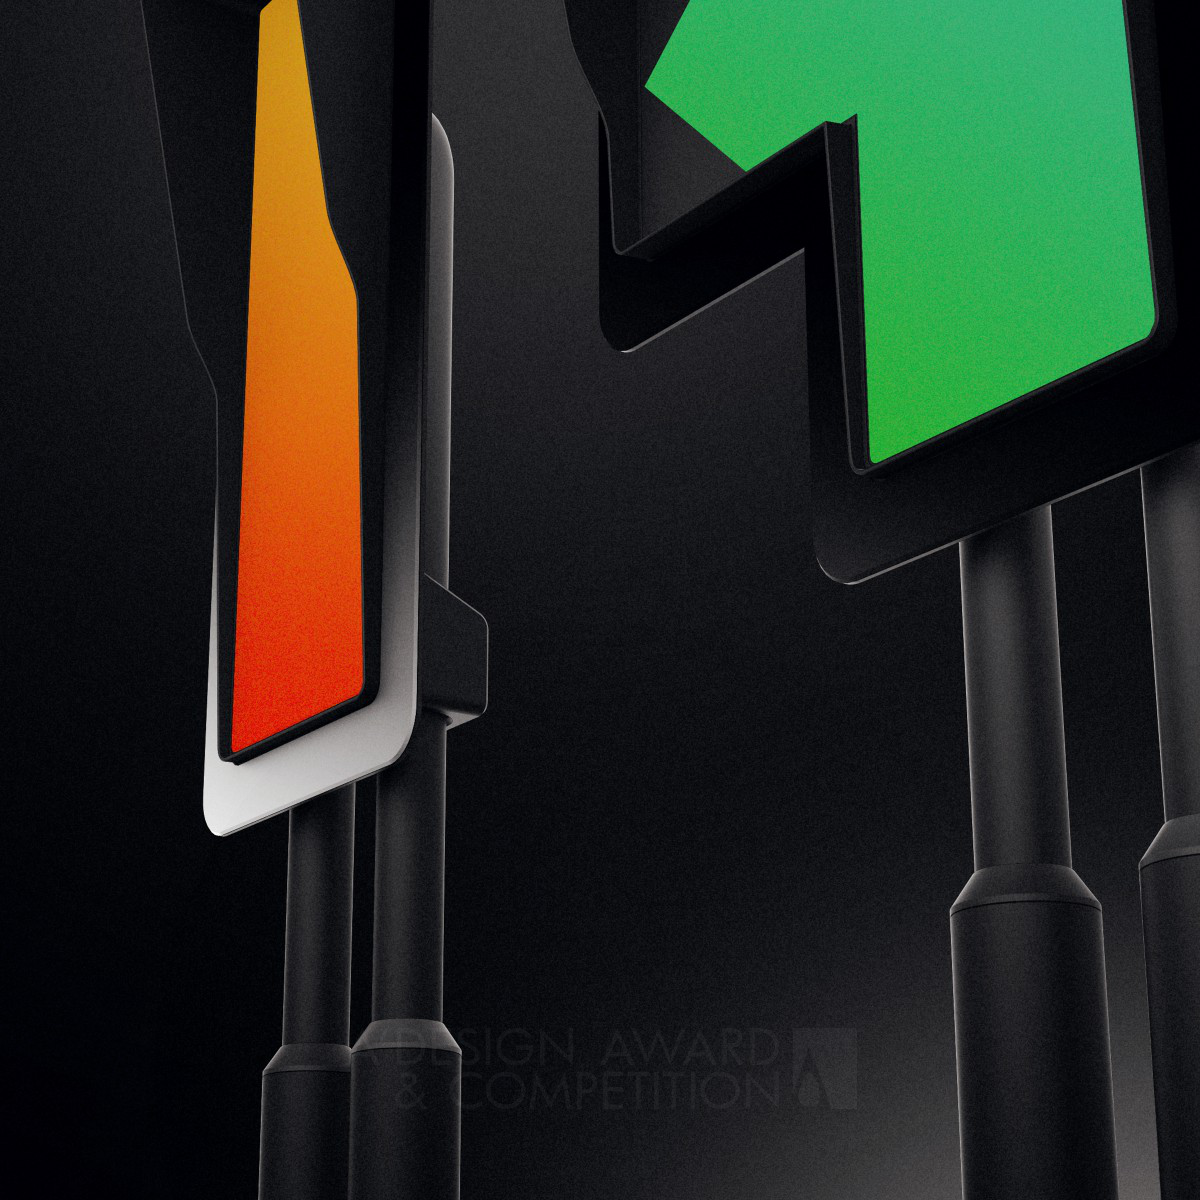 Traffic Light System Managing optimisation for Traffic Lights